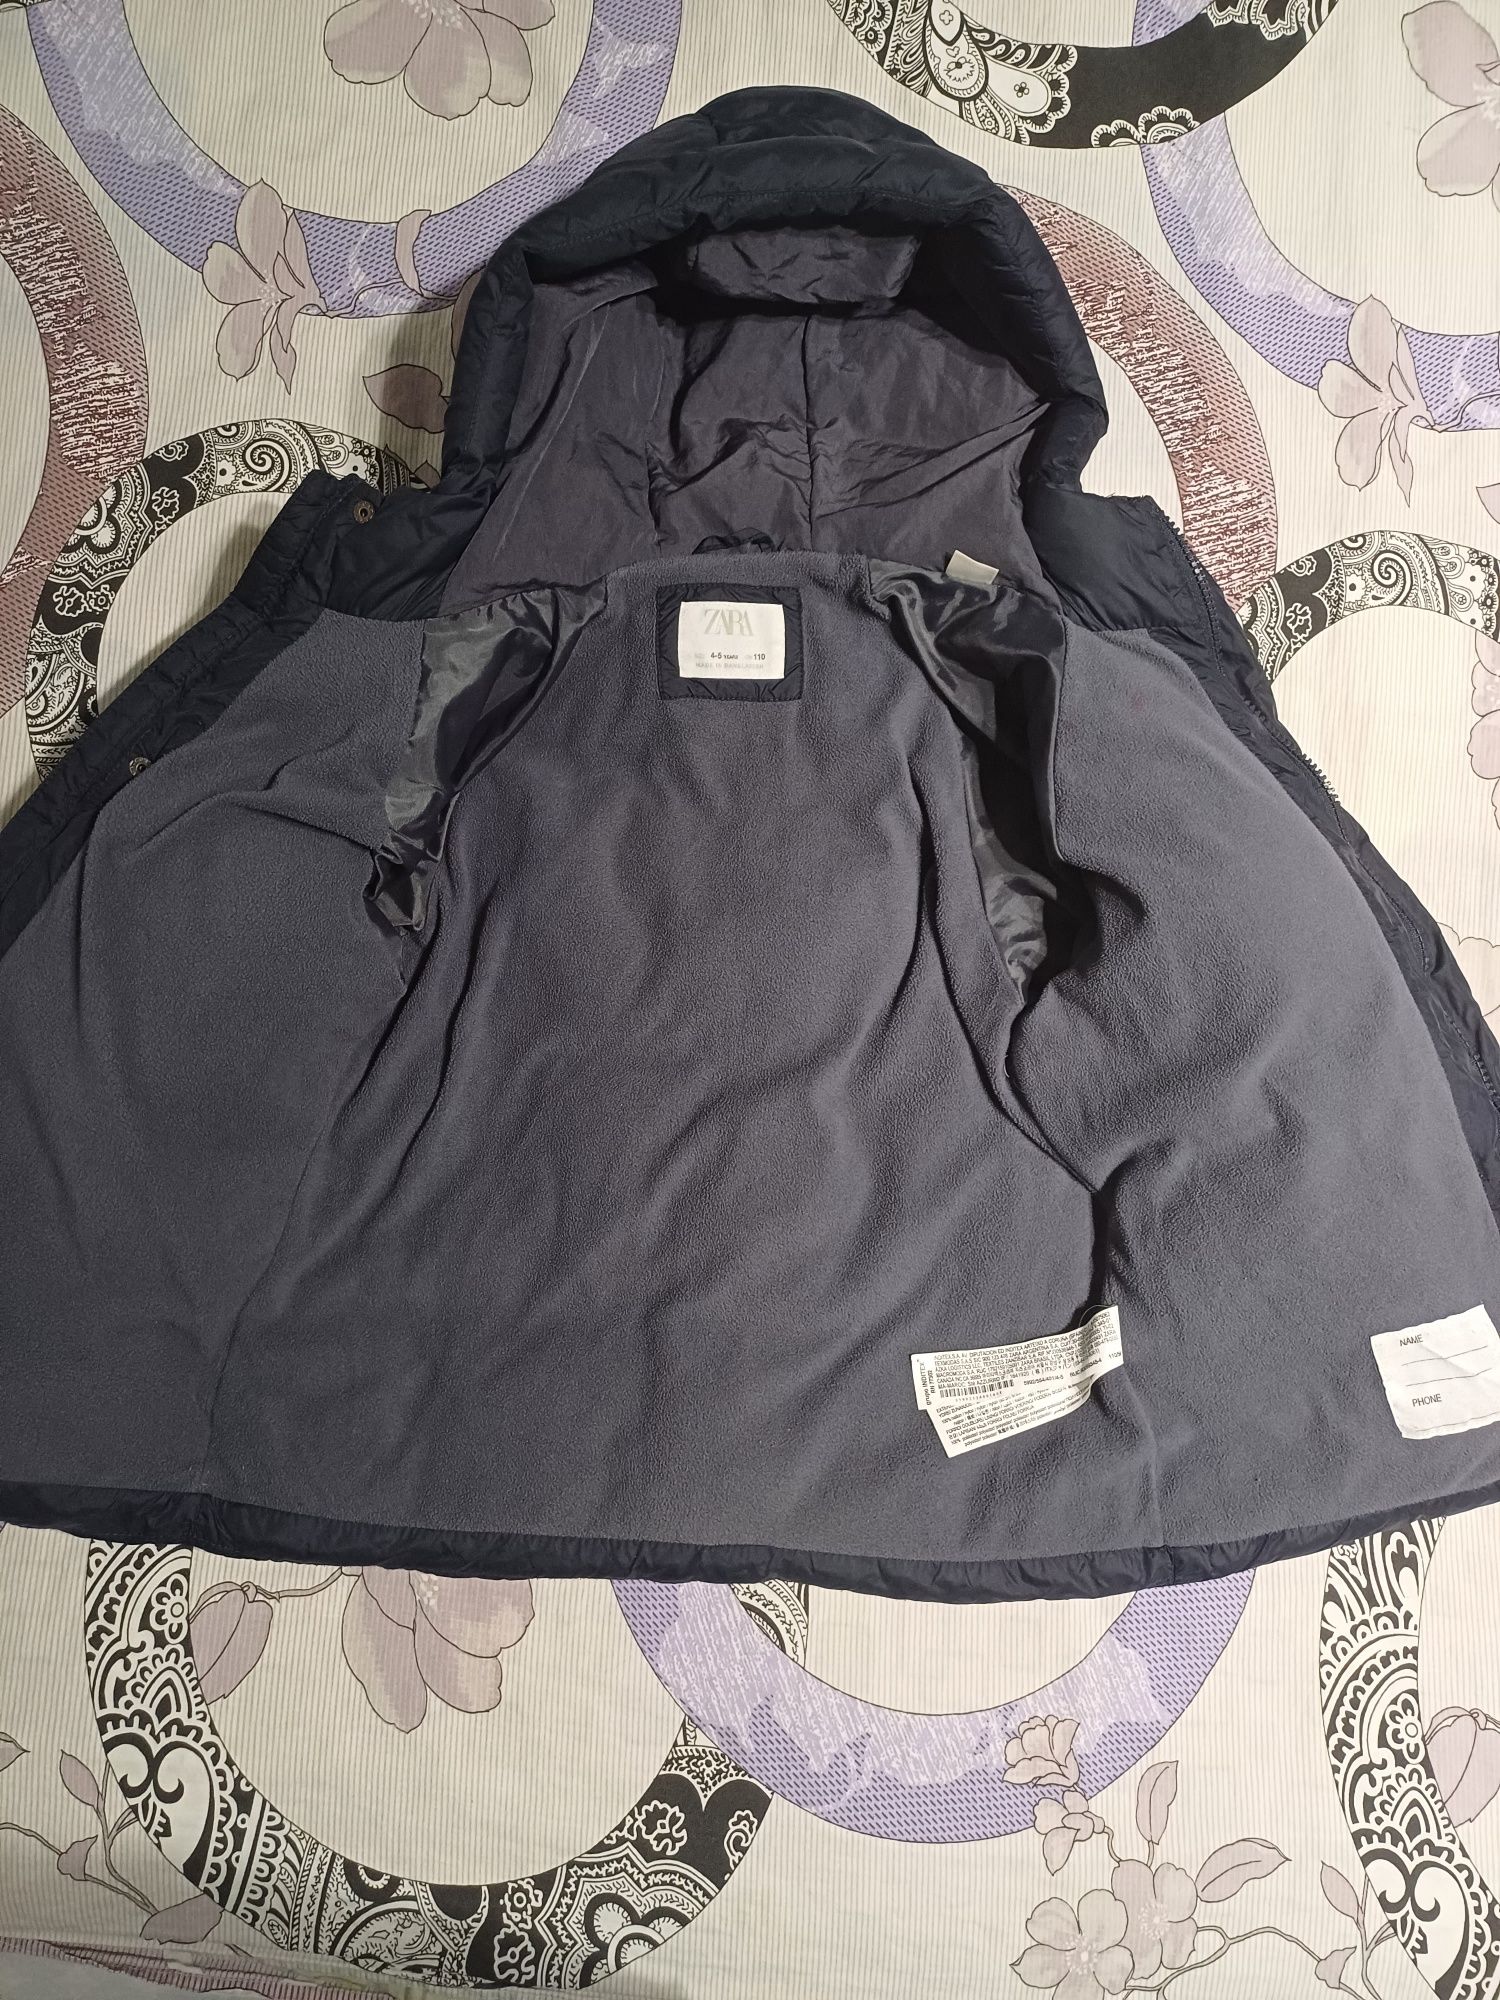 Зимняя куртка от Zara 4-5 лет